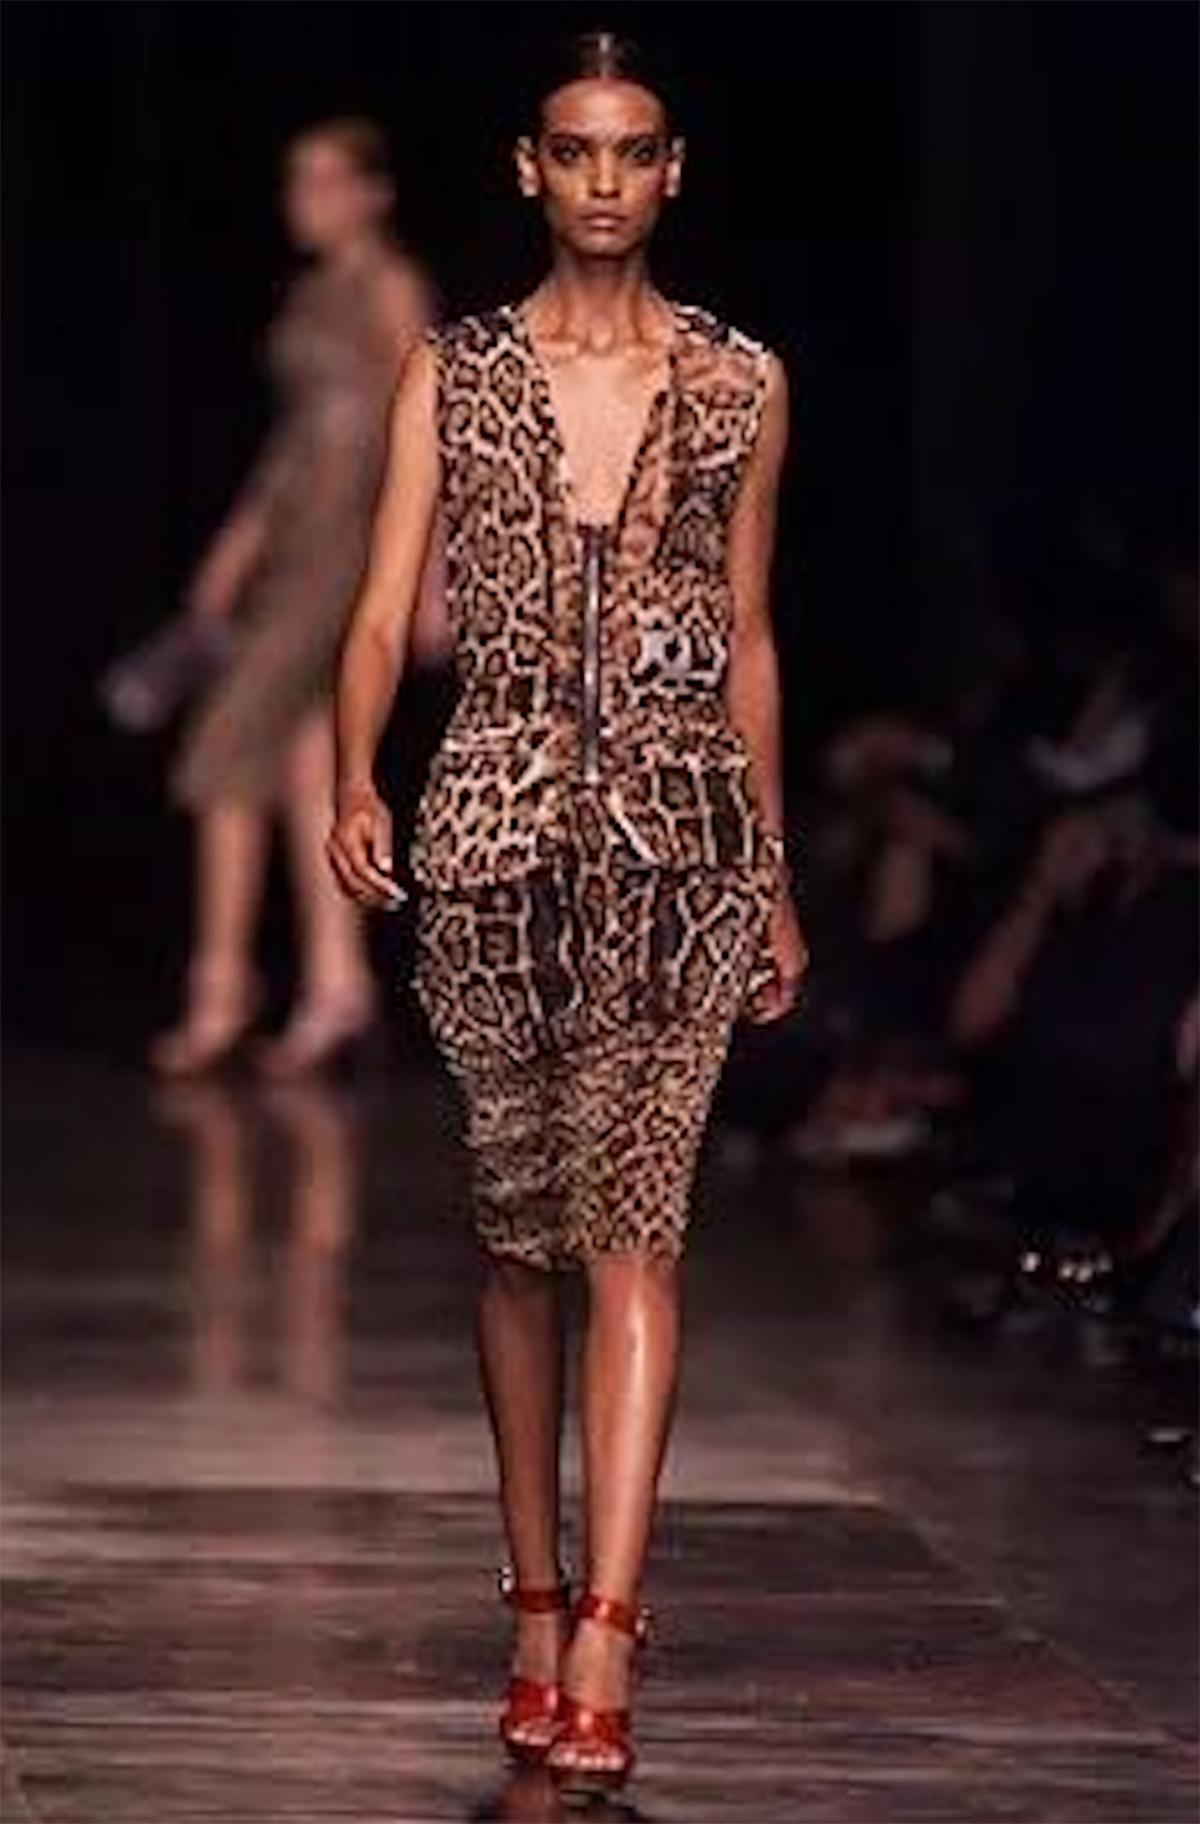 Ce deux-pièces imprimé léopard a été présenté en ouverture de la collection Rive Gauche printemps-été 2002 d'Yves Saint Laurent par Tom Ford.

Cet élégant deux-pièces se compose d'une jupe crayon en soie à taille haute et d'un top en soie sans